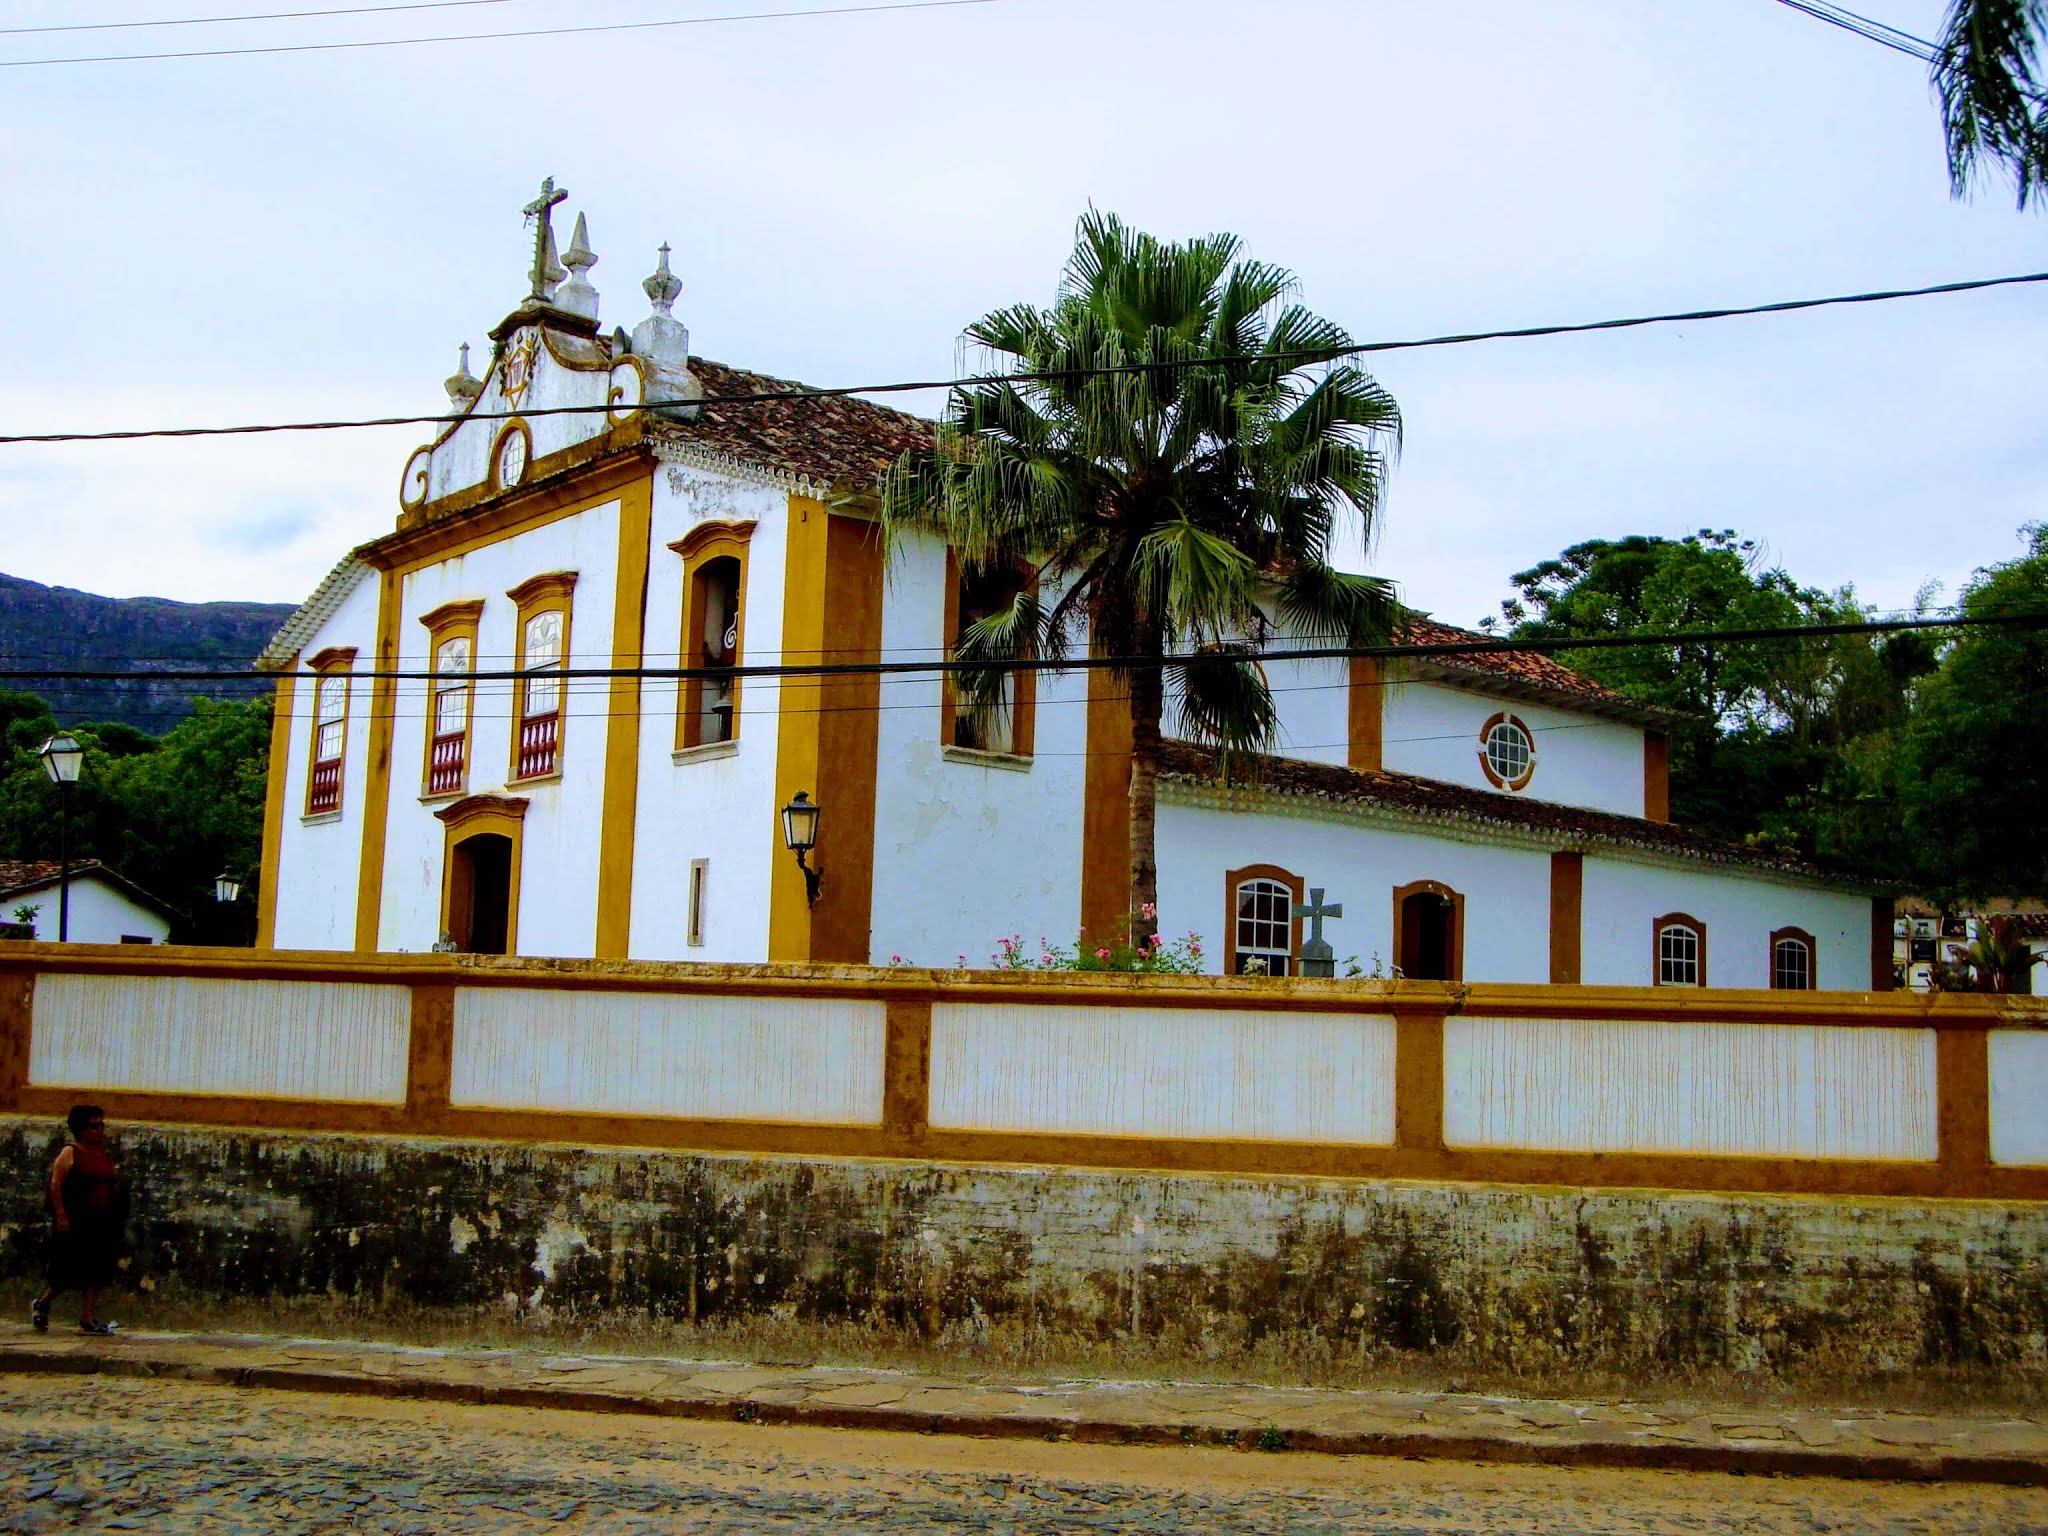 Conheça as Igrejas Históricas de Tiradentes